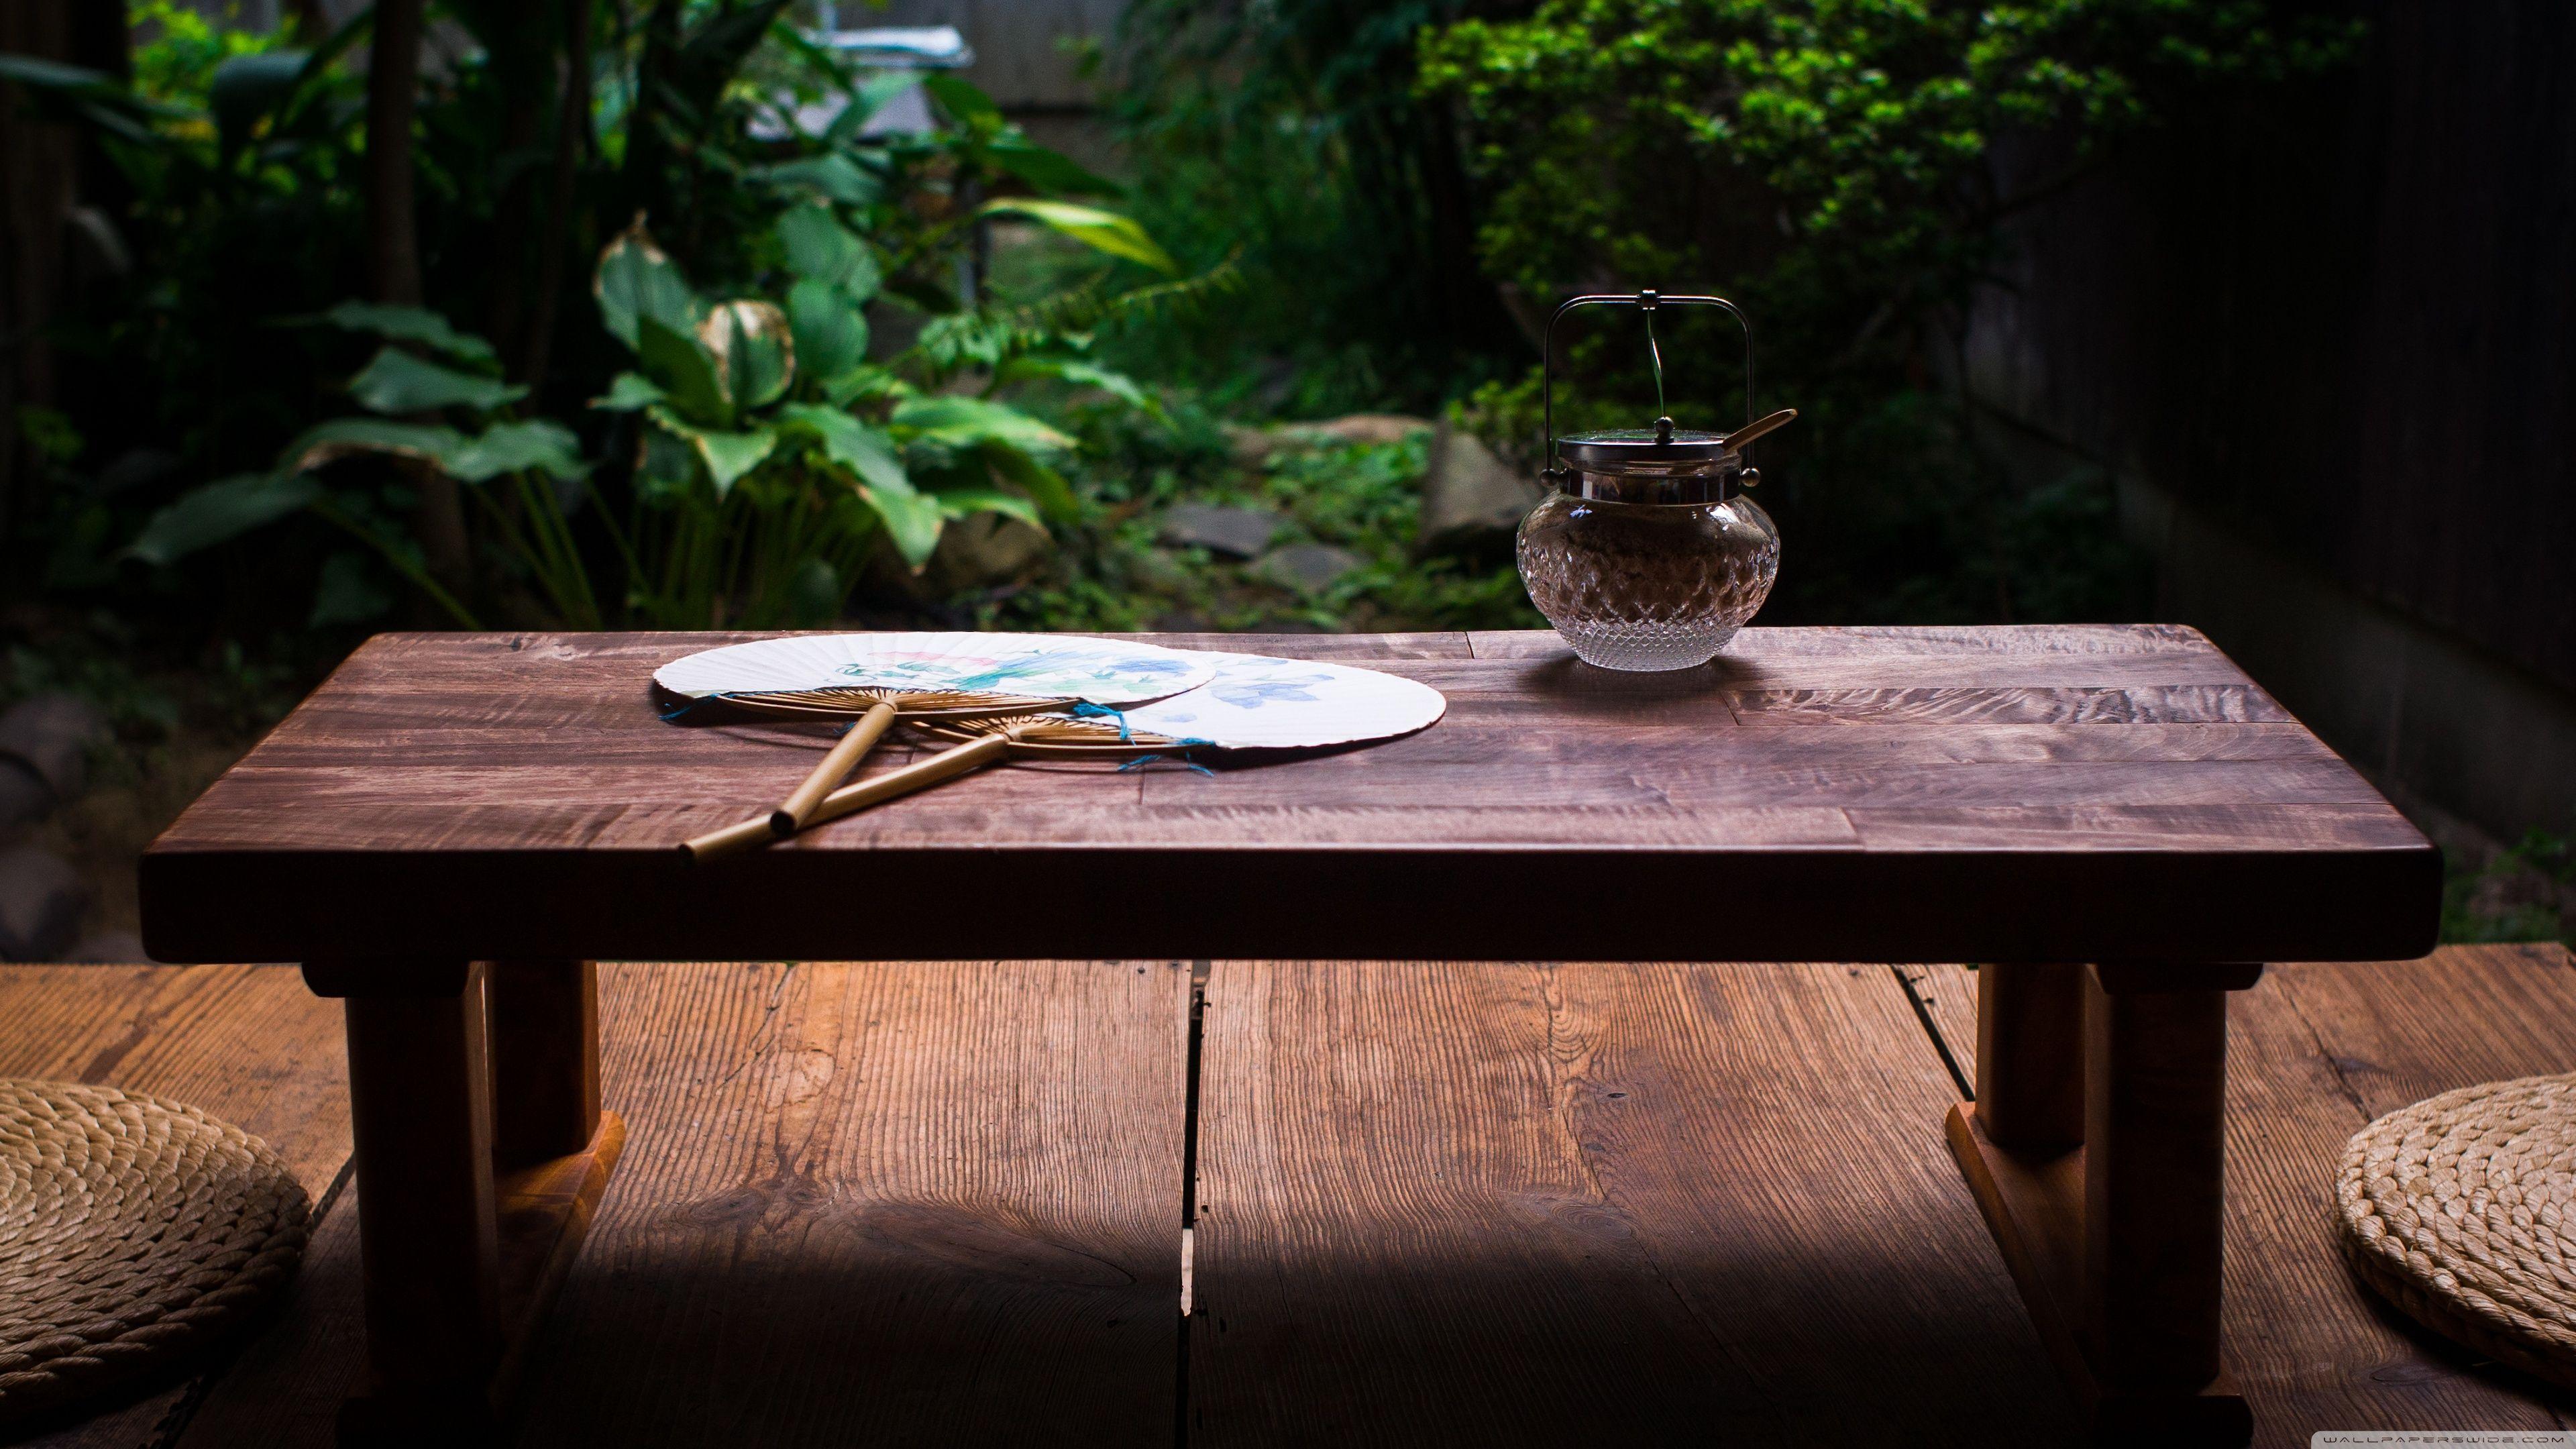 Фул стол. Столик в японском стиле. Деревянный стол в японском стиле. Обеденный стол в японском стиле. Деревянная поверхность стола.